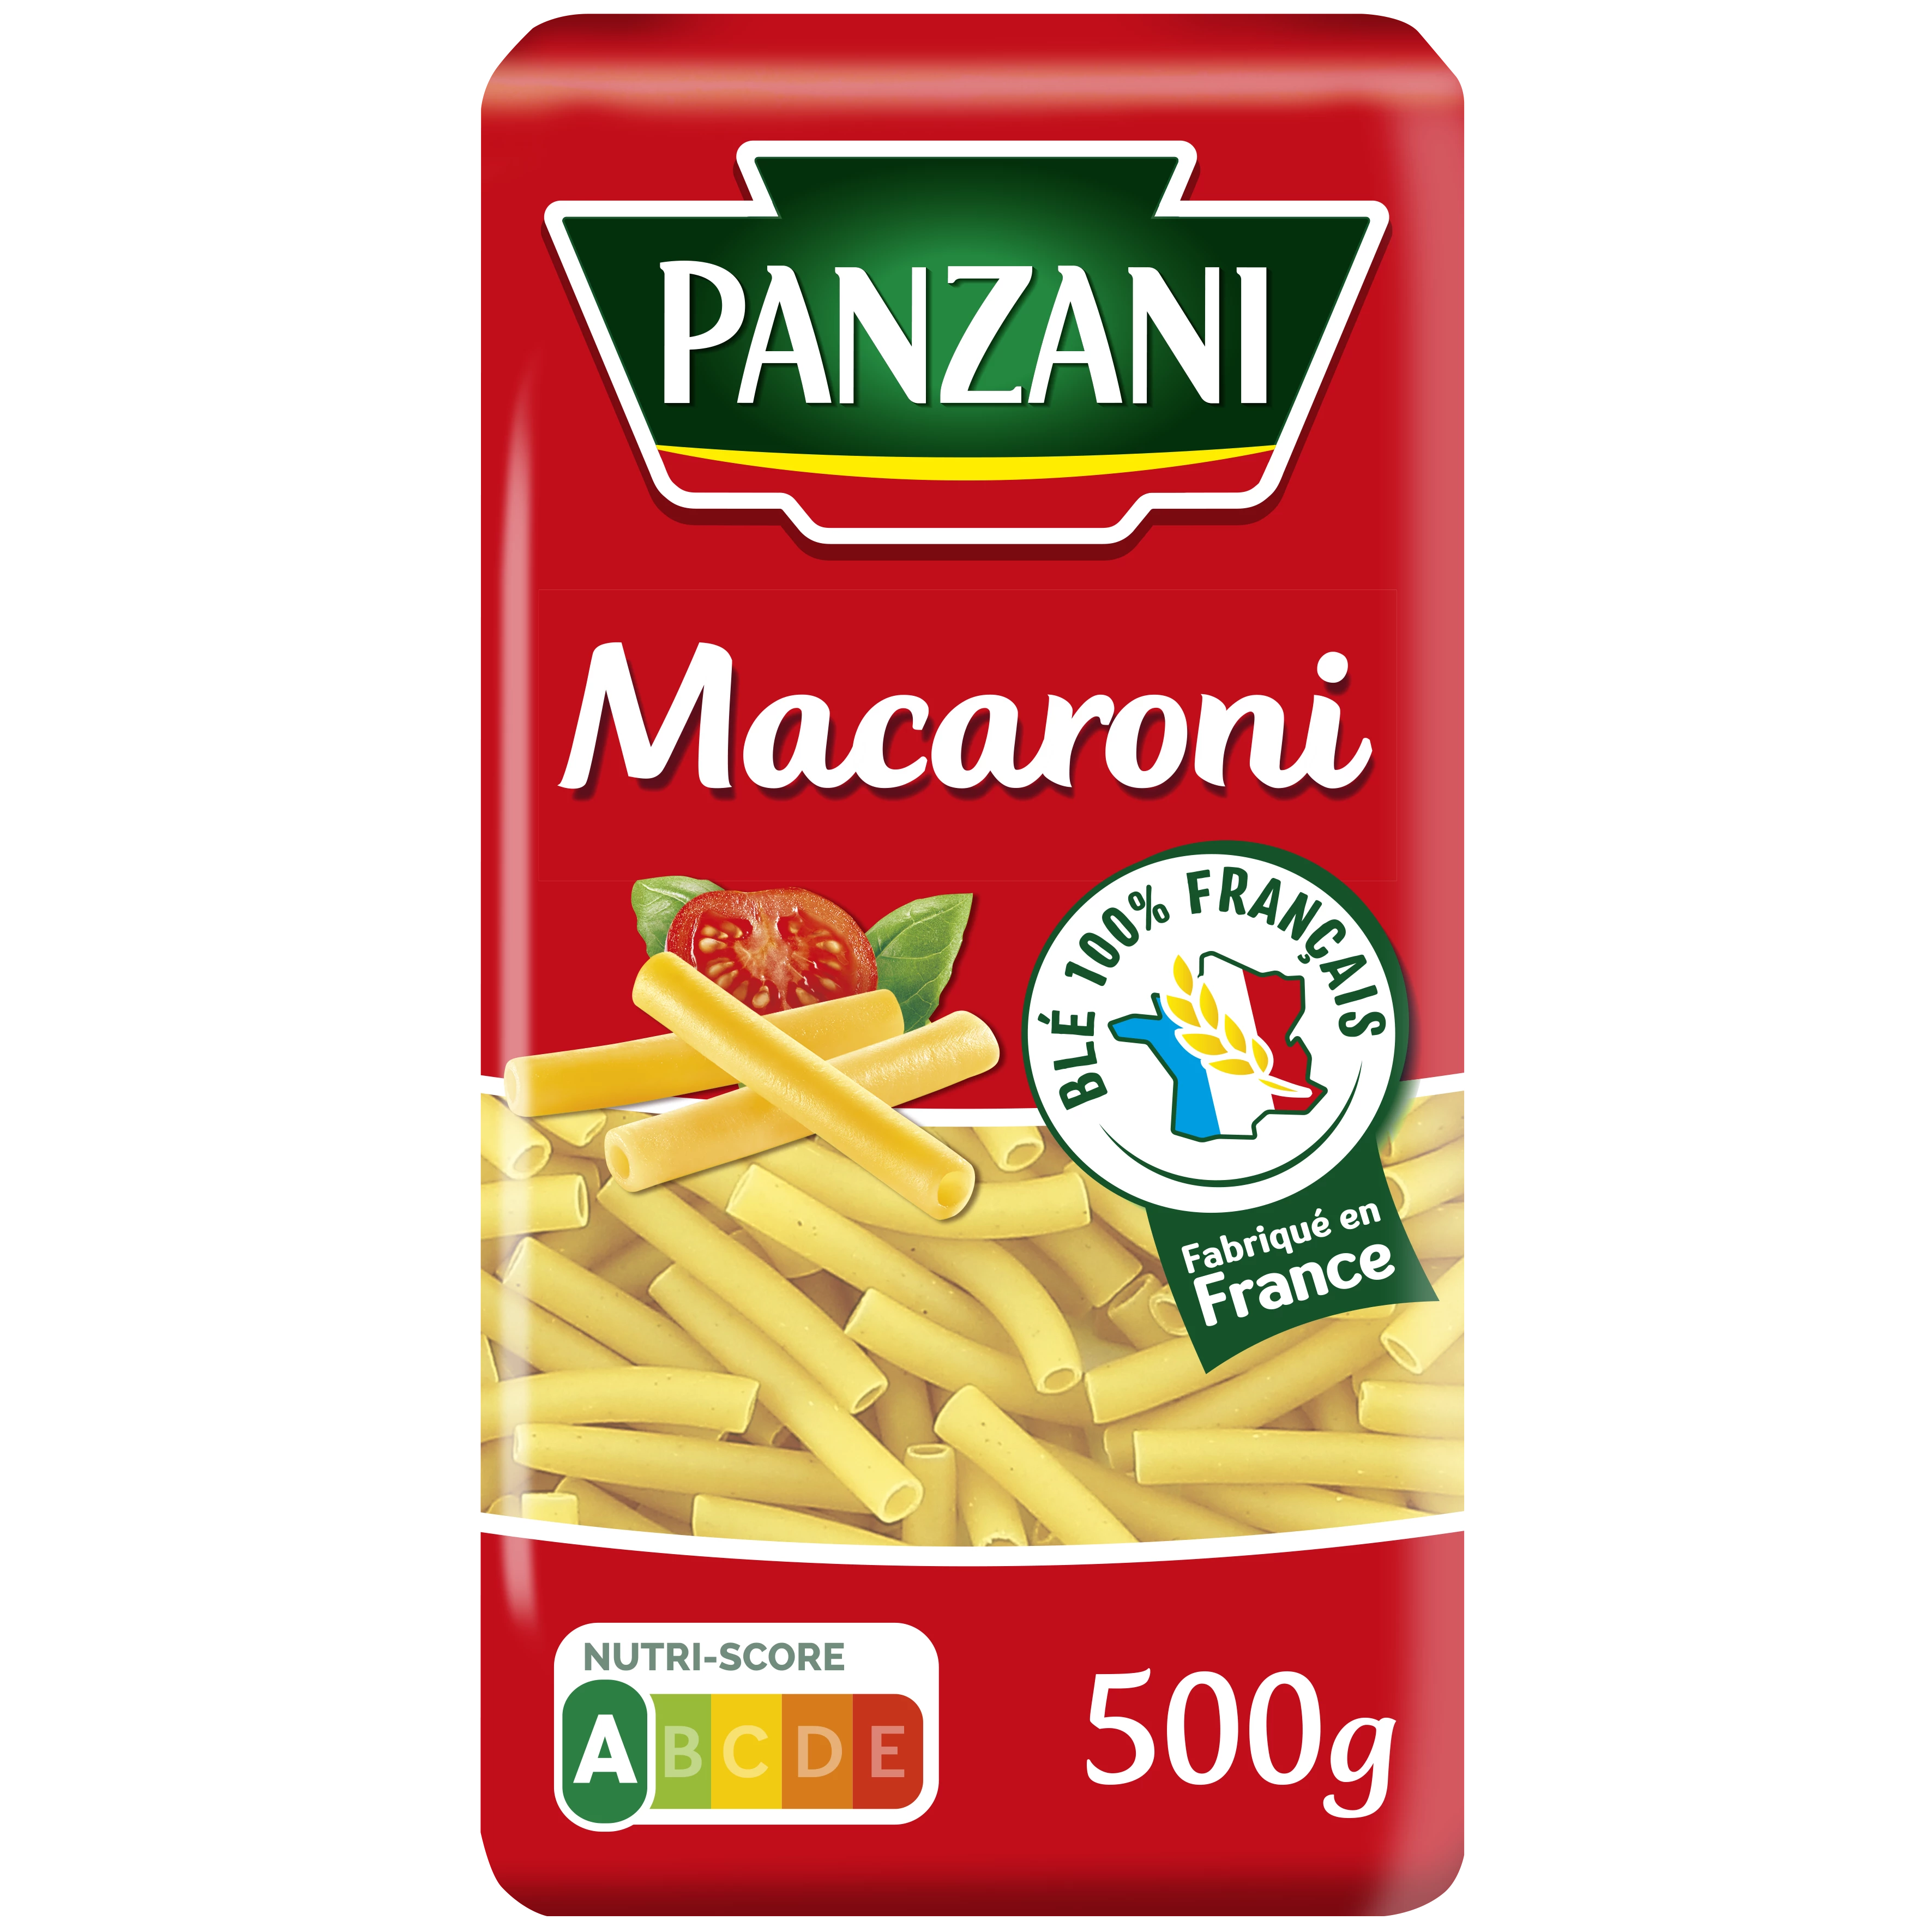 मैकरोनी पास्ता, 500 ग्राम - पैनज़ानी